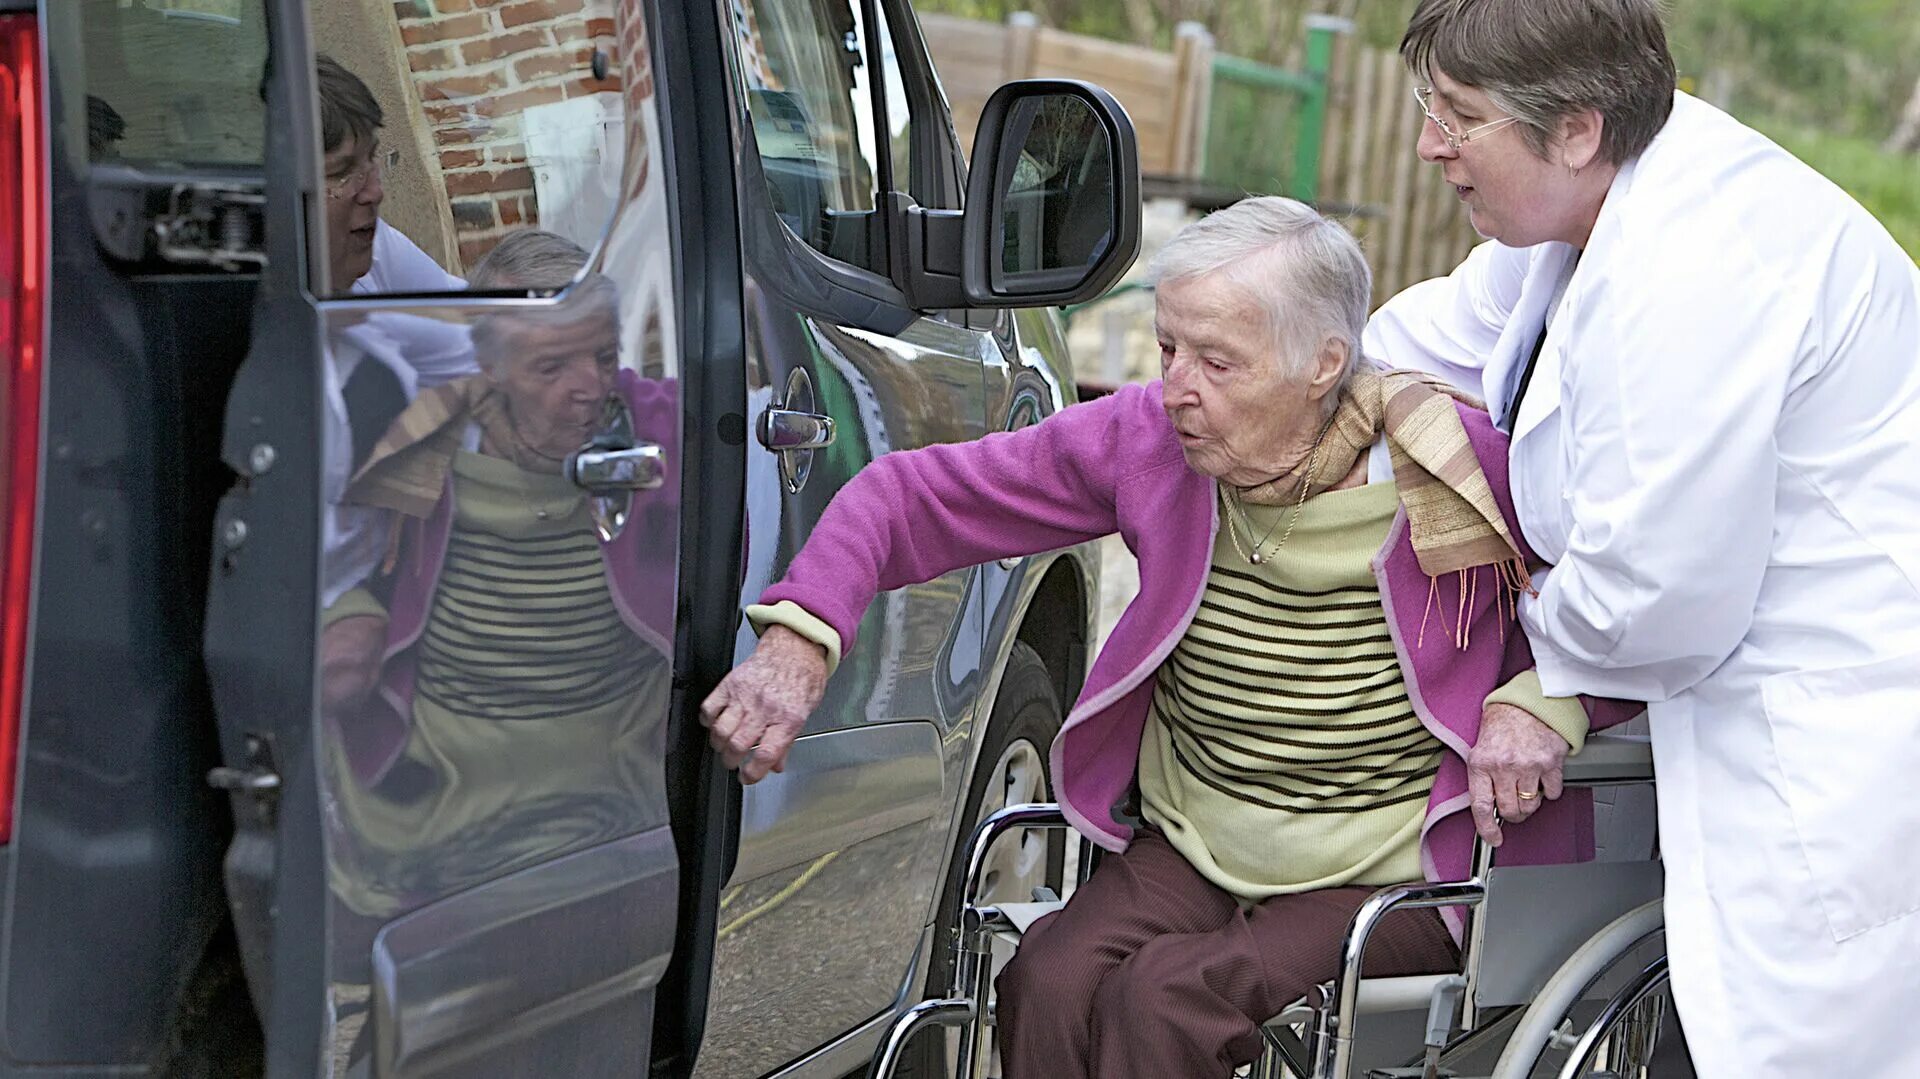 Общество пенсионеров и инвалидов. Пожилые люди и инвалиды. Пенсионер инвалид. Люди с ограниченными возможностями пожилые. Социальная поддержка инвалидам и пожилым.